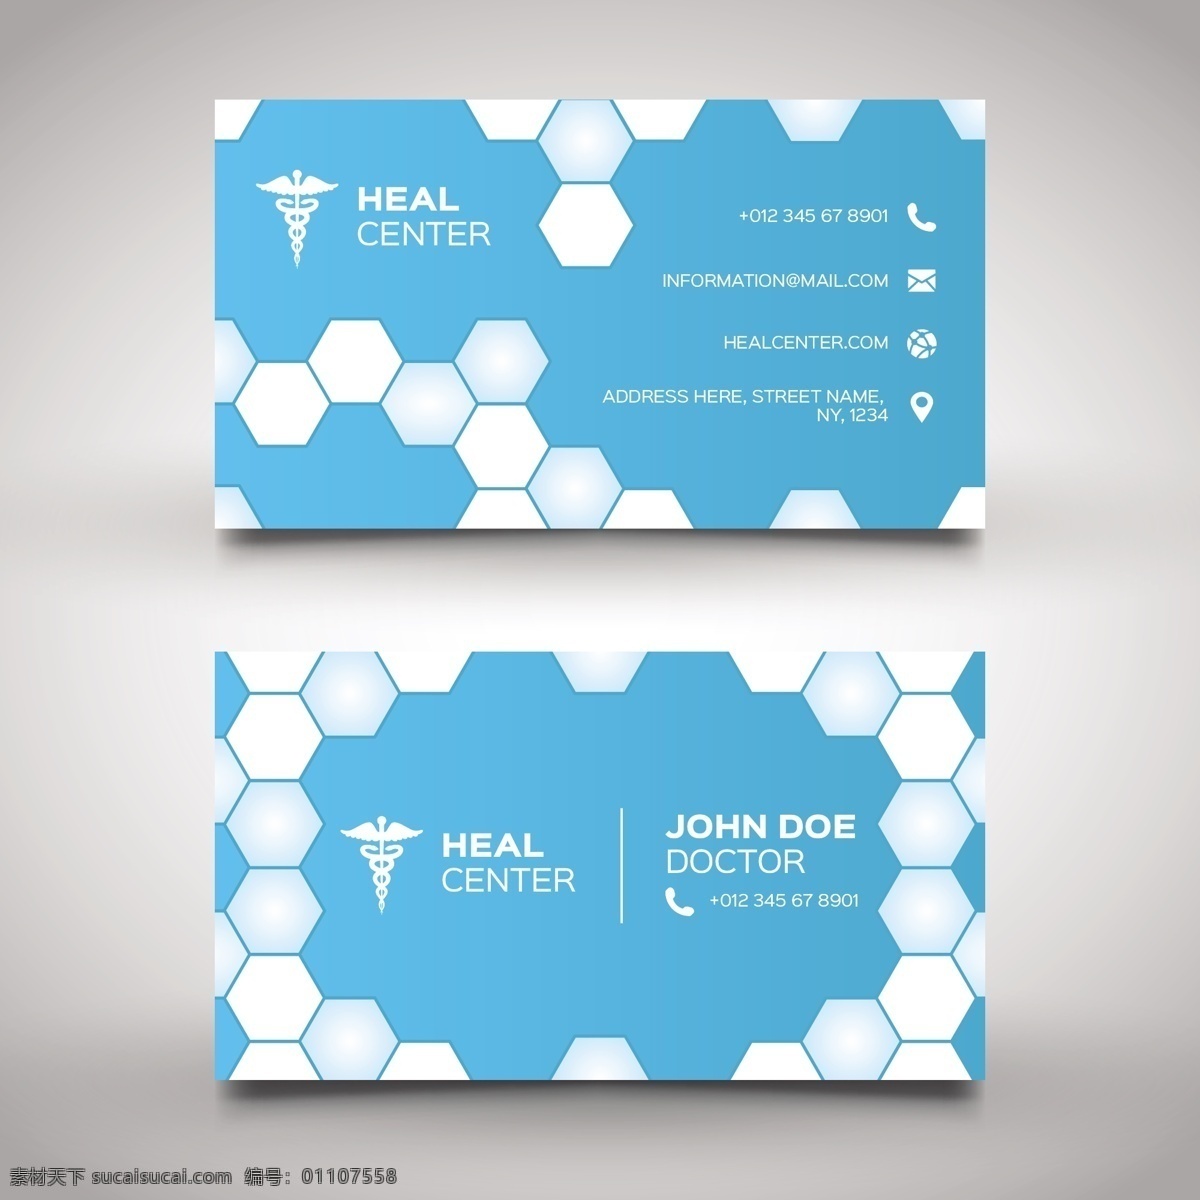 六边形 蓝色 医疗卡 商标 名片 商业 抽象 卡片 模板 几何 医疗 办公室 医生 形状 健康 科学 演示 医院 文具 公司 医药 品牌